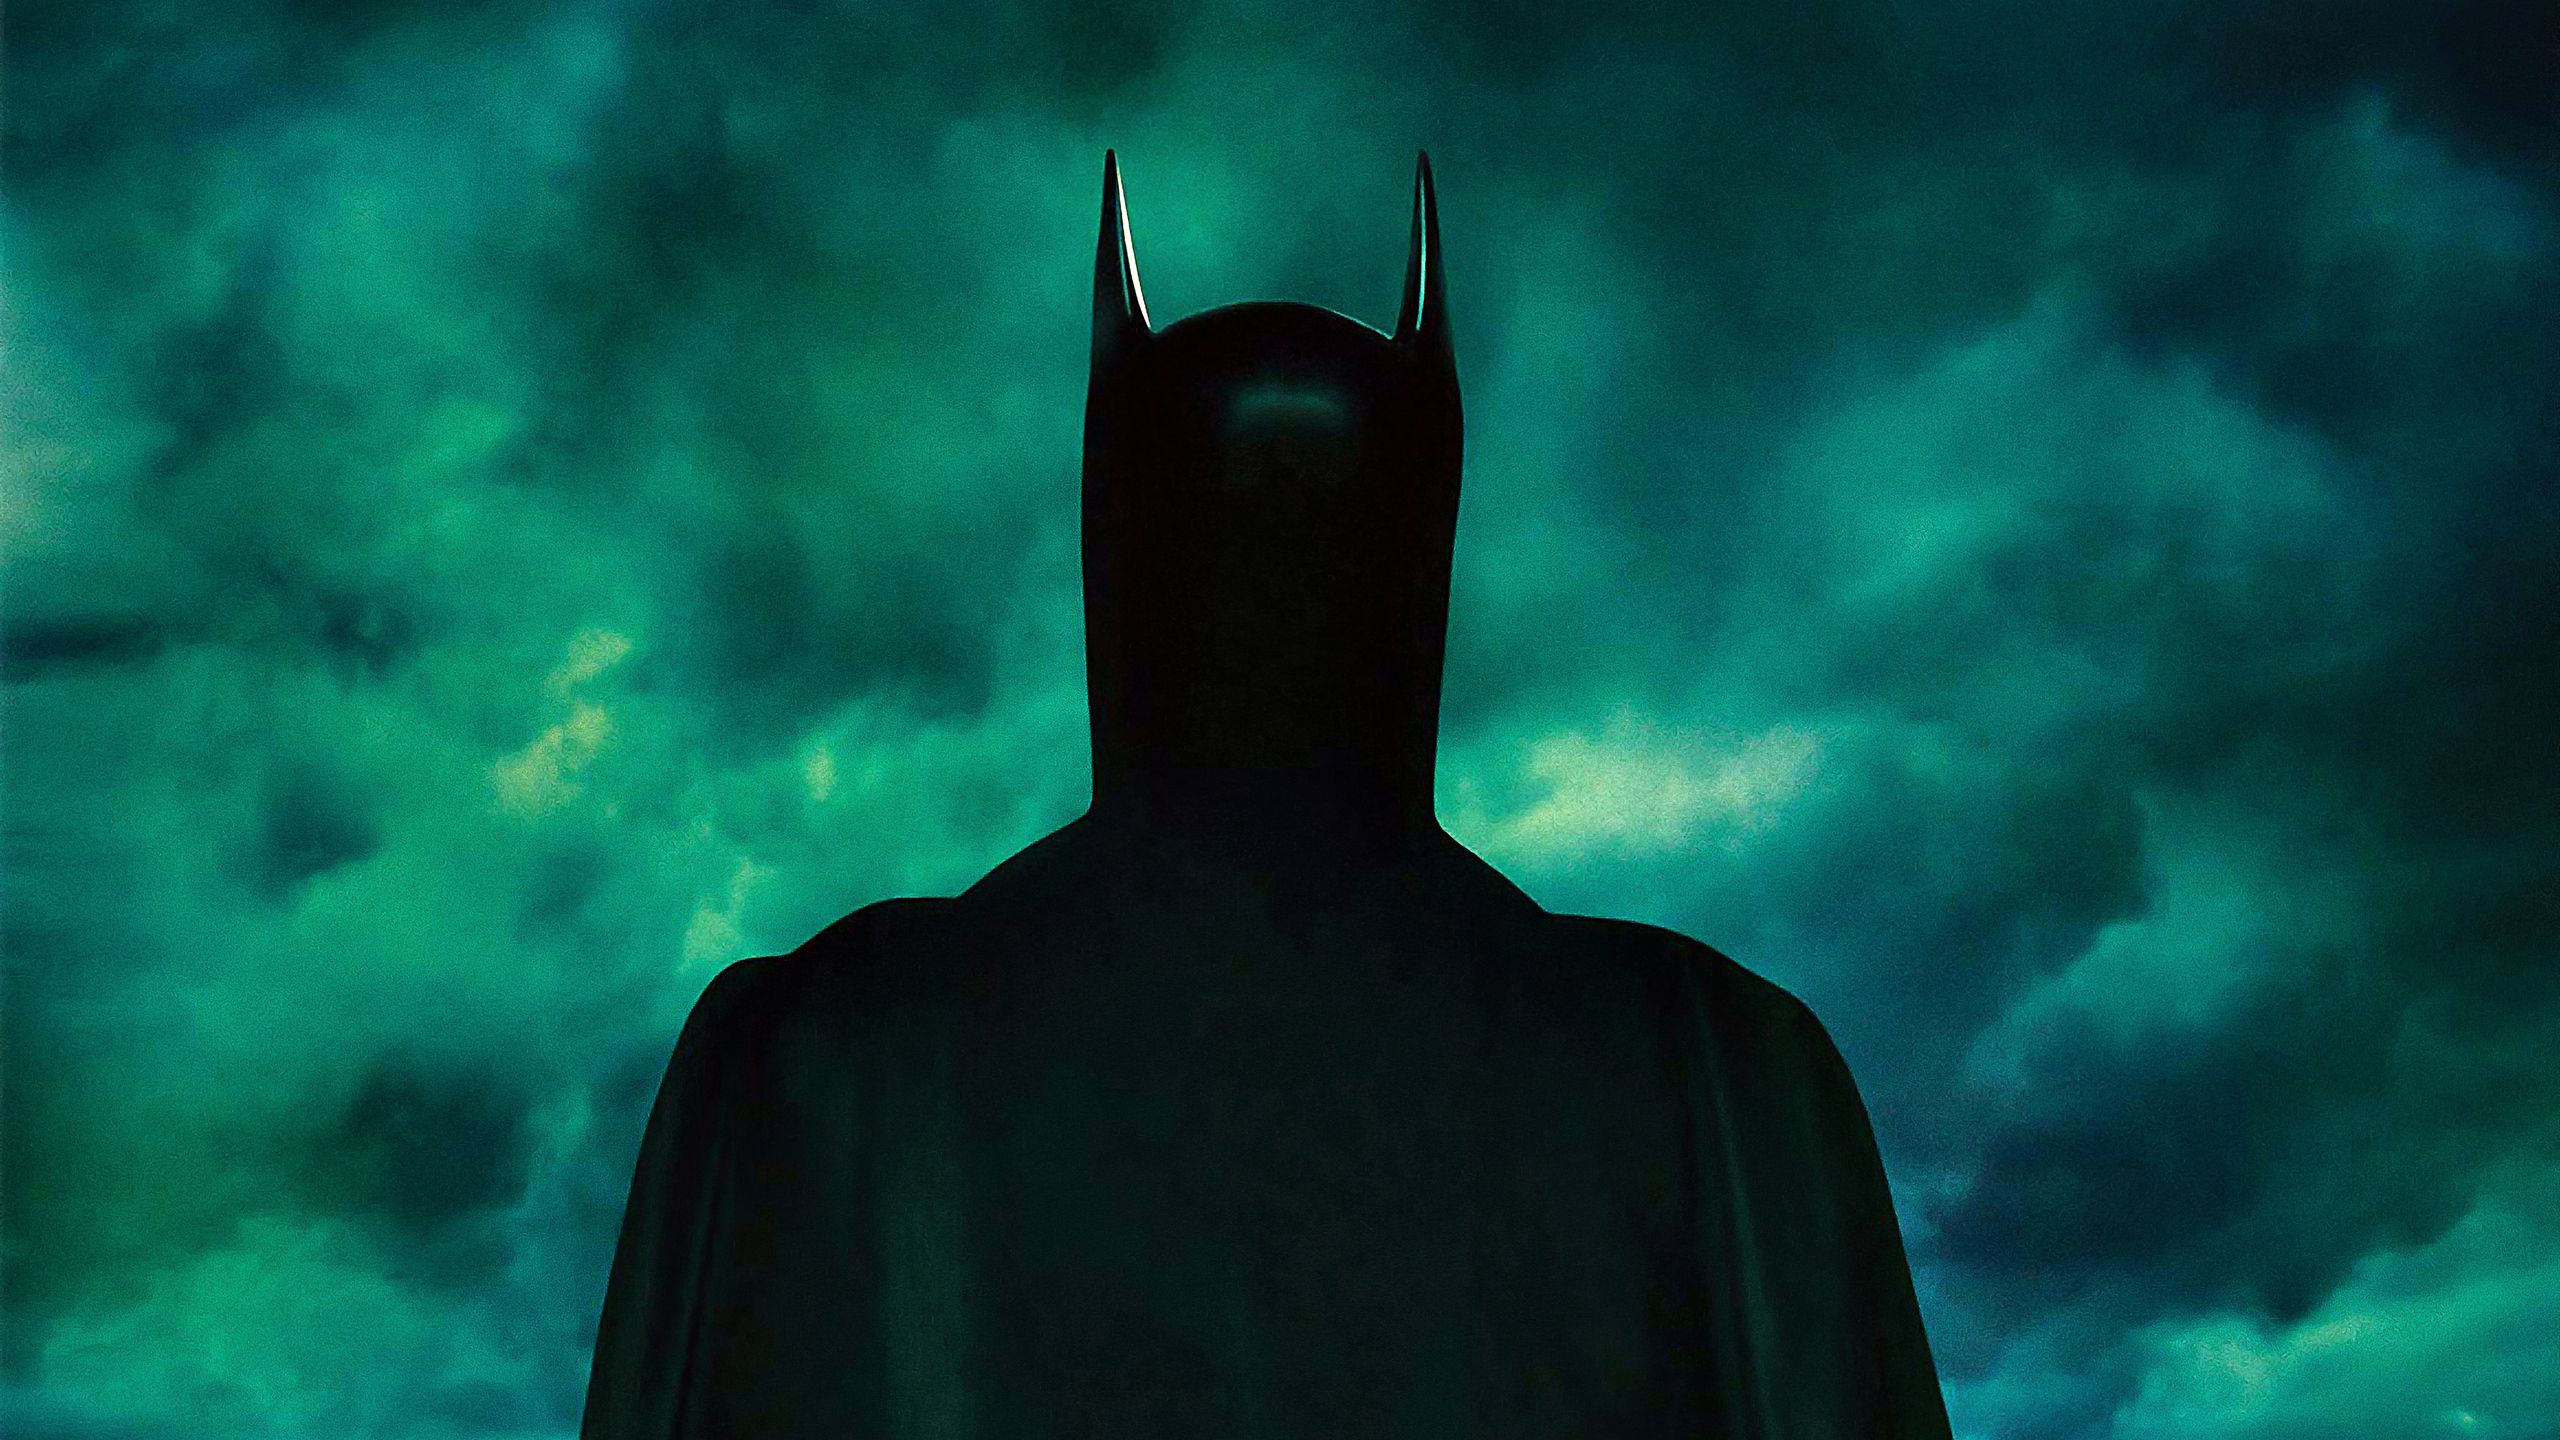 batman forever movie wallpaper